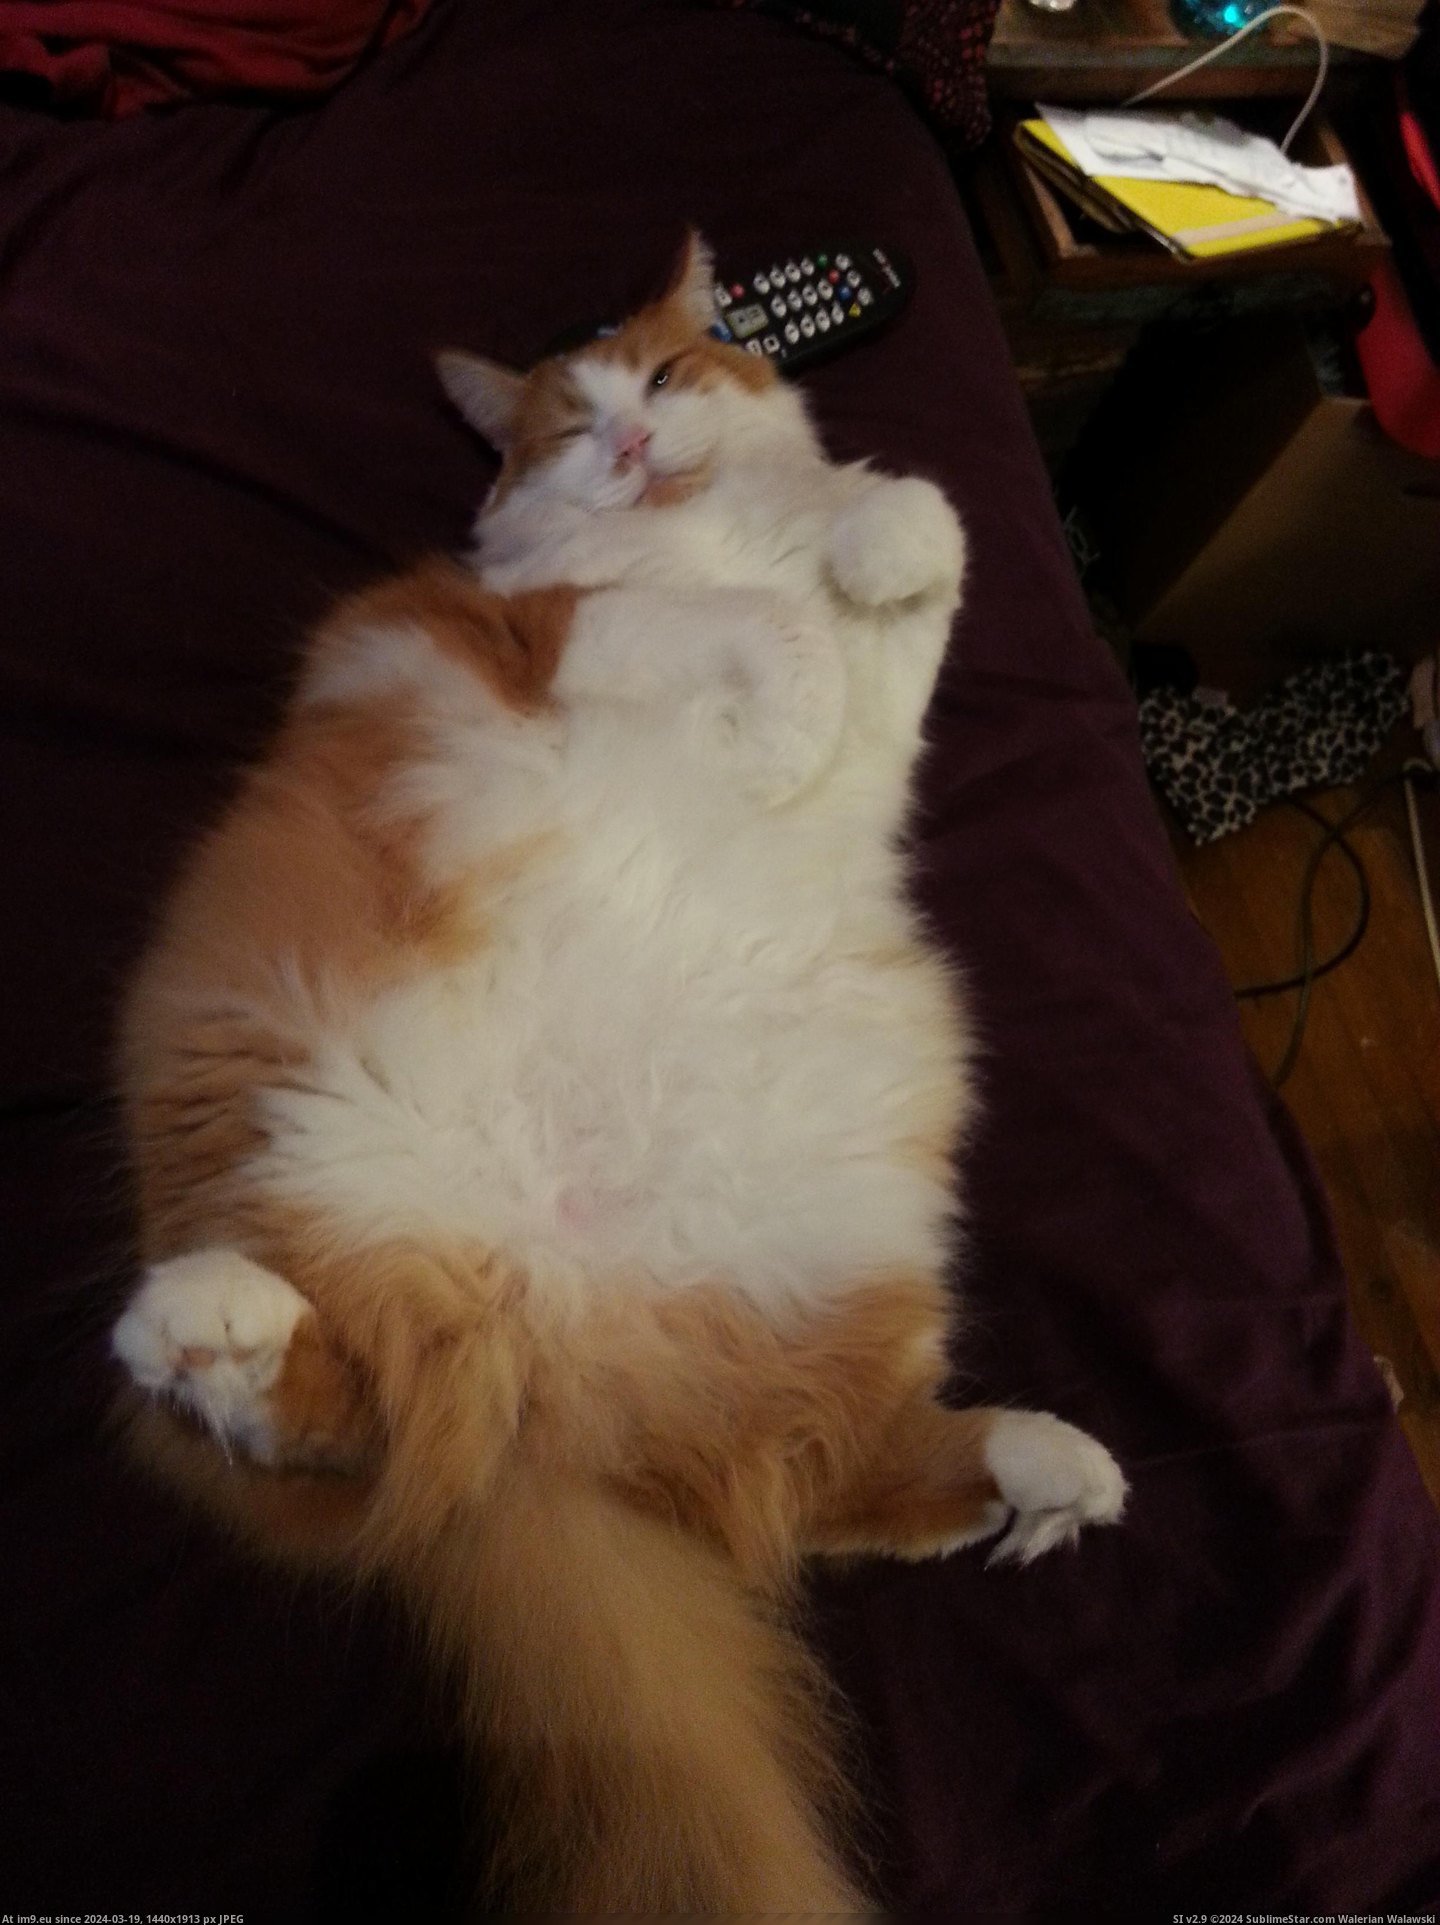 #Cats #Tummy #Dorito #Rub [Cats] Dorito post tummy rub Pic. (Image of album My r/CATS favs))